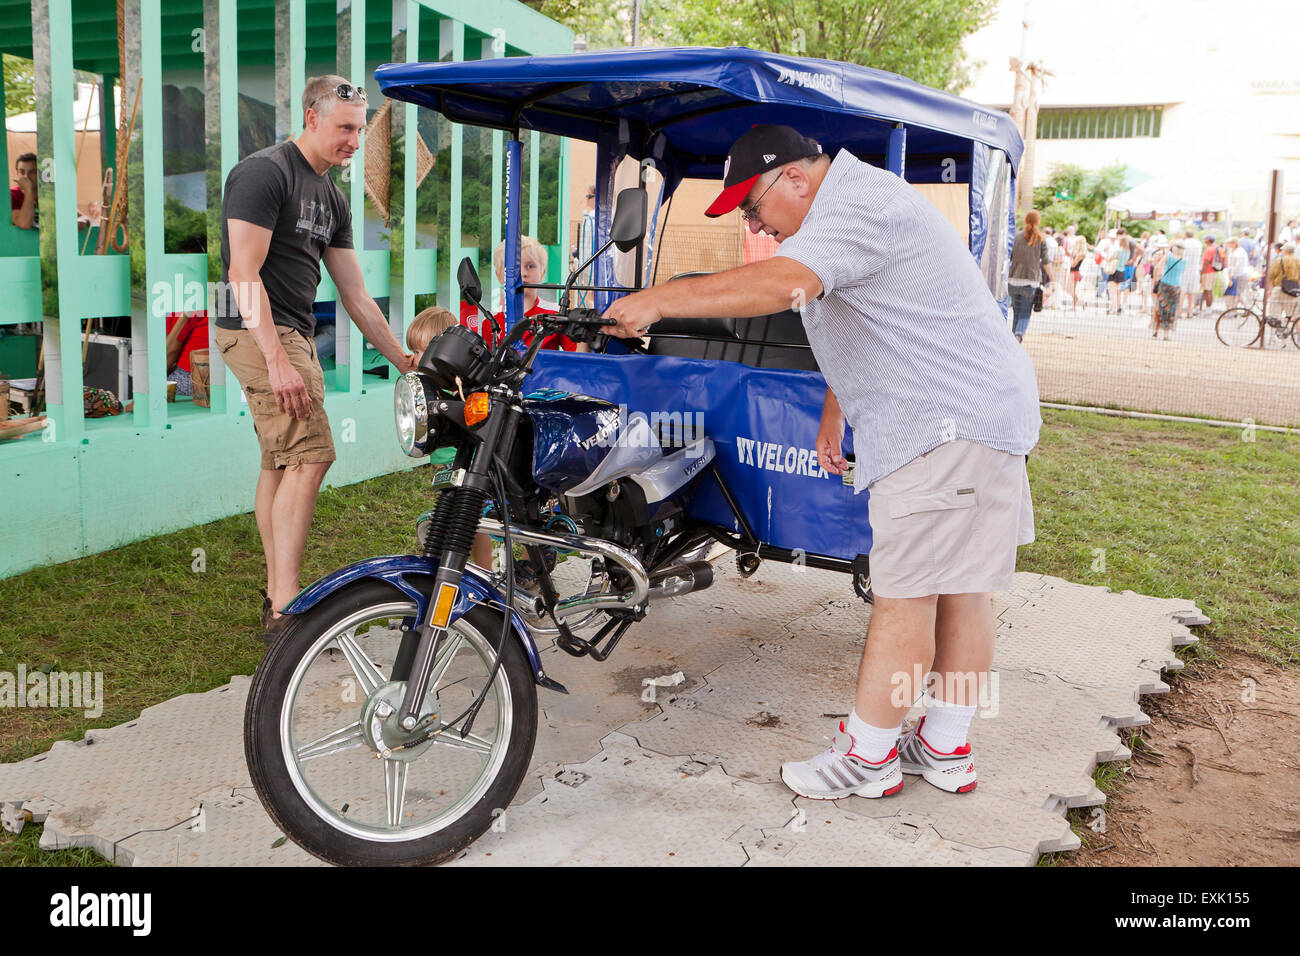 Hombre en moto taxi cubierto (trike taxi, moto taxi, auto rickshaw) - EE.UU. Foto de stock